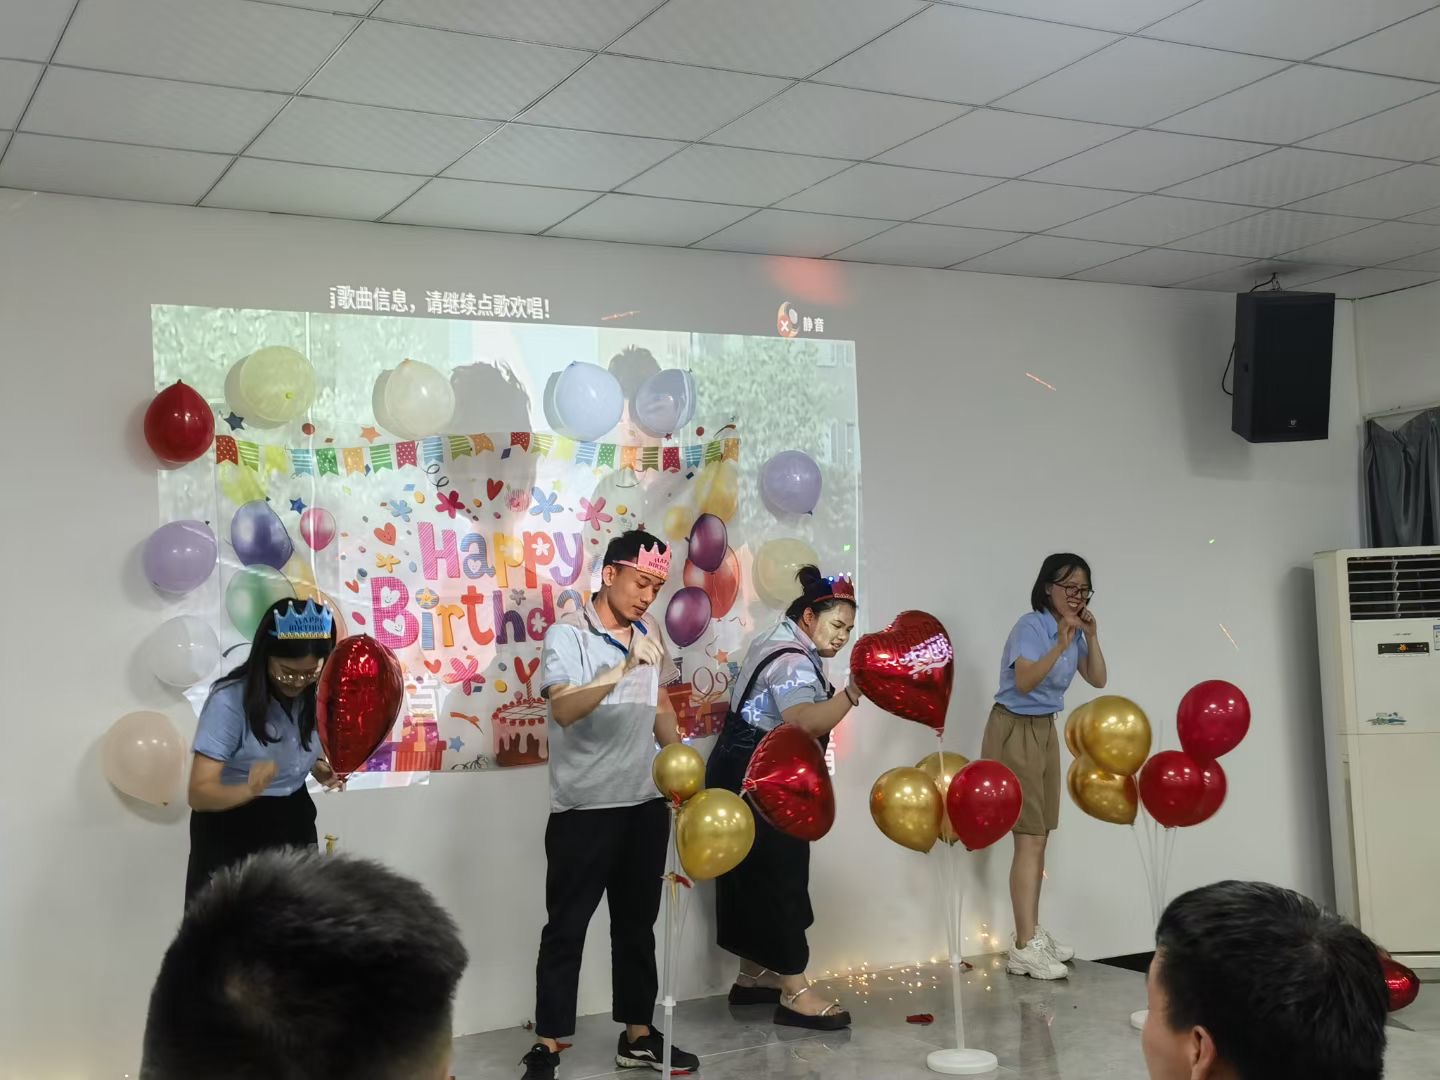 La empresa celebra los cumpleaños de los empleados con diversión y juegos